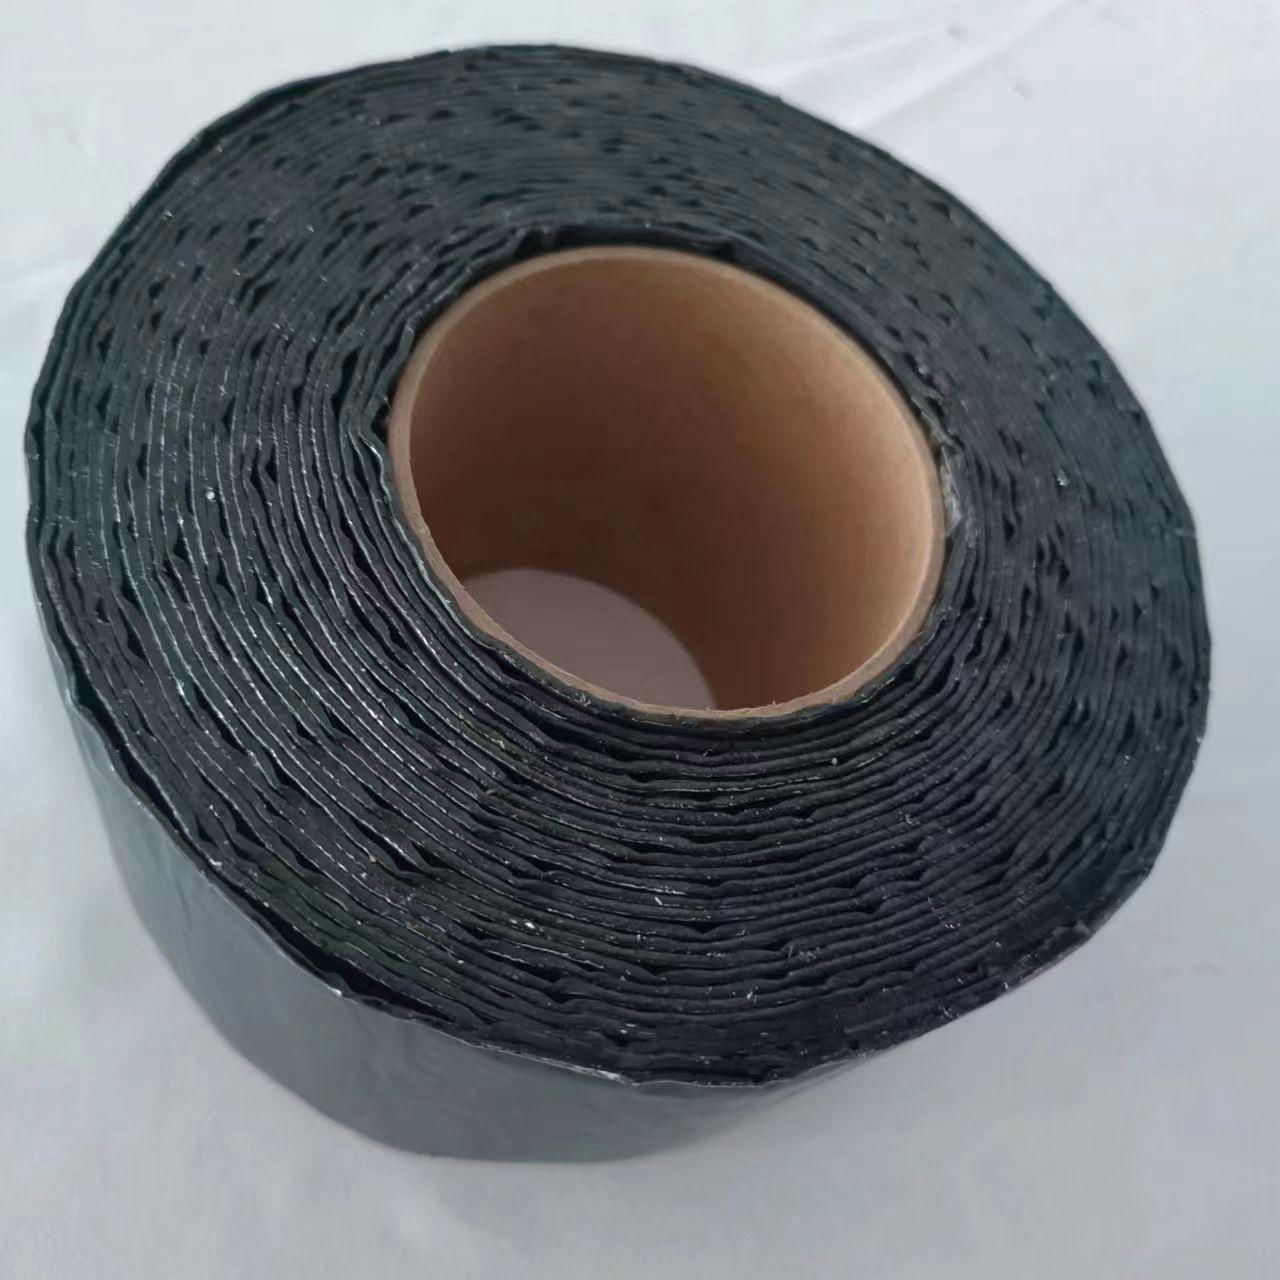 Customized label Waterproofing  self-adhesive Bitumen tape /Flashing band  3